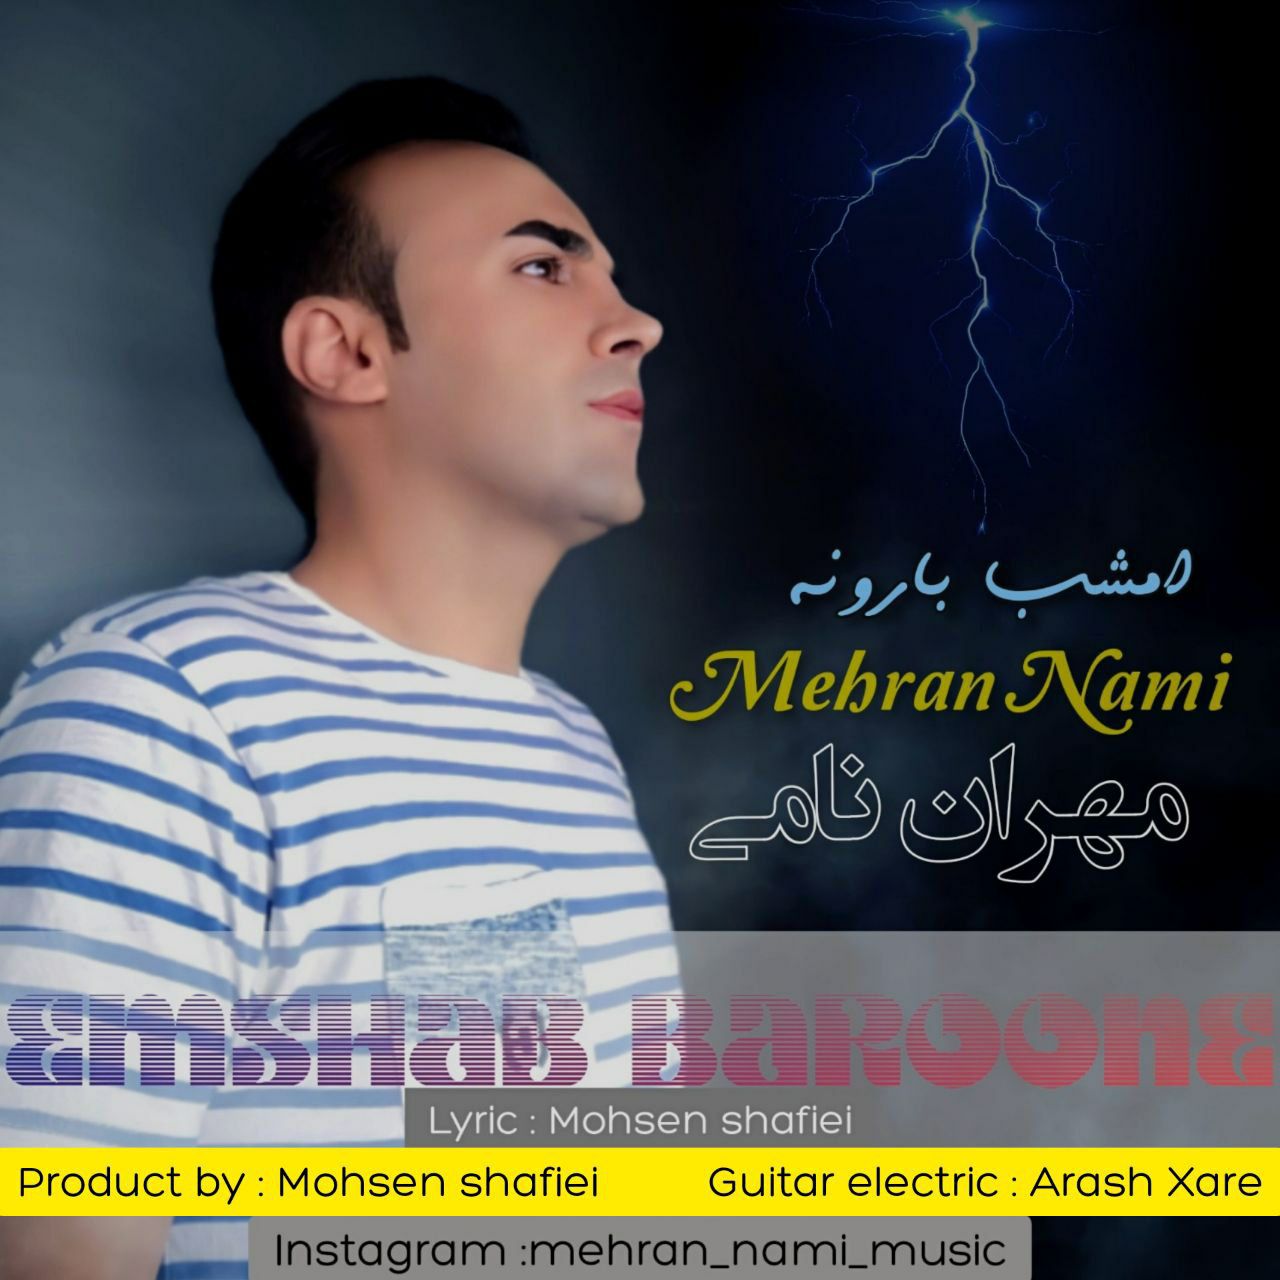 Mehran Nami – Emshab baroone